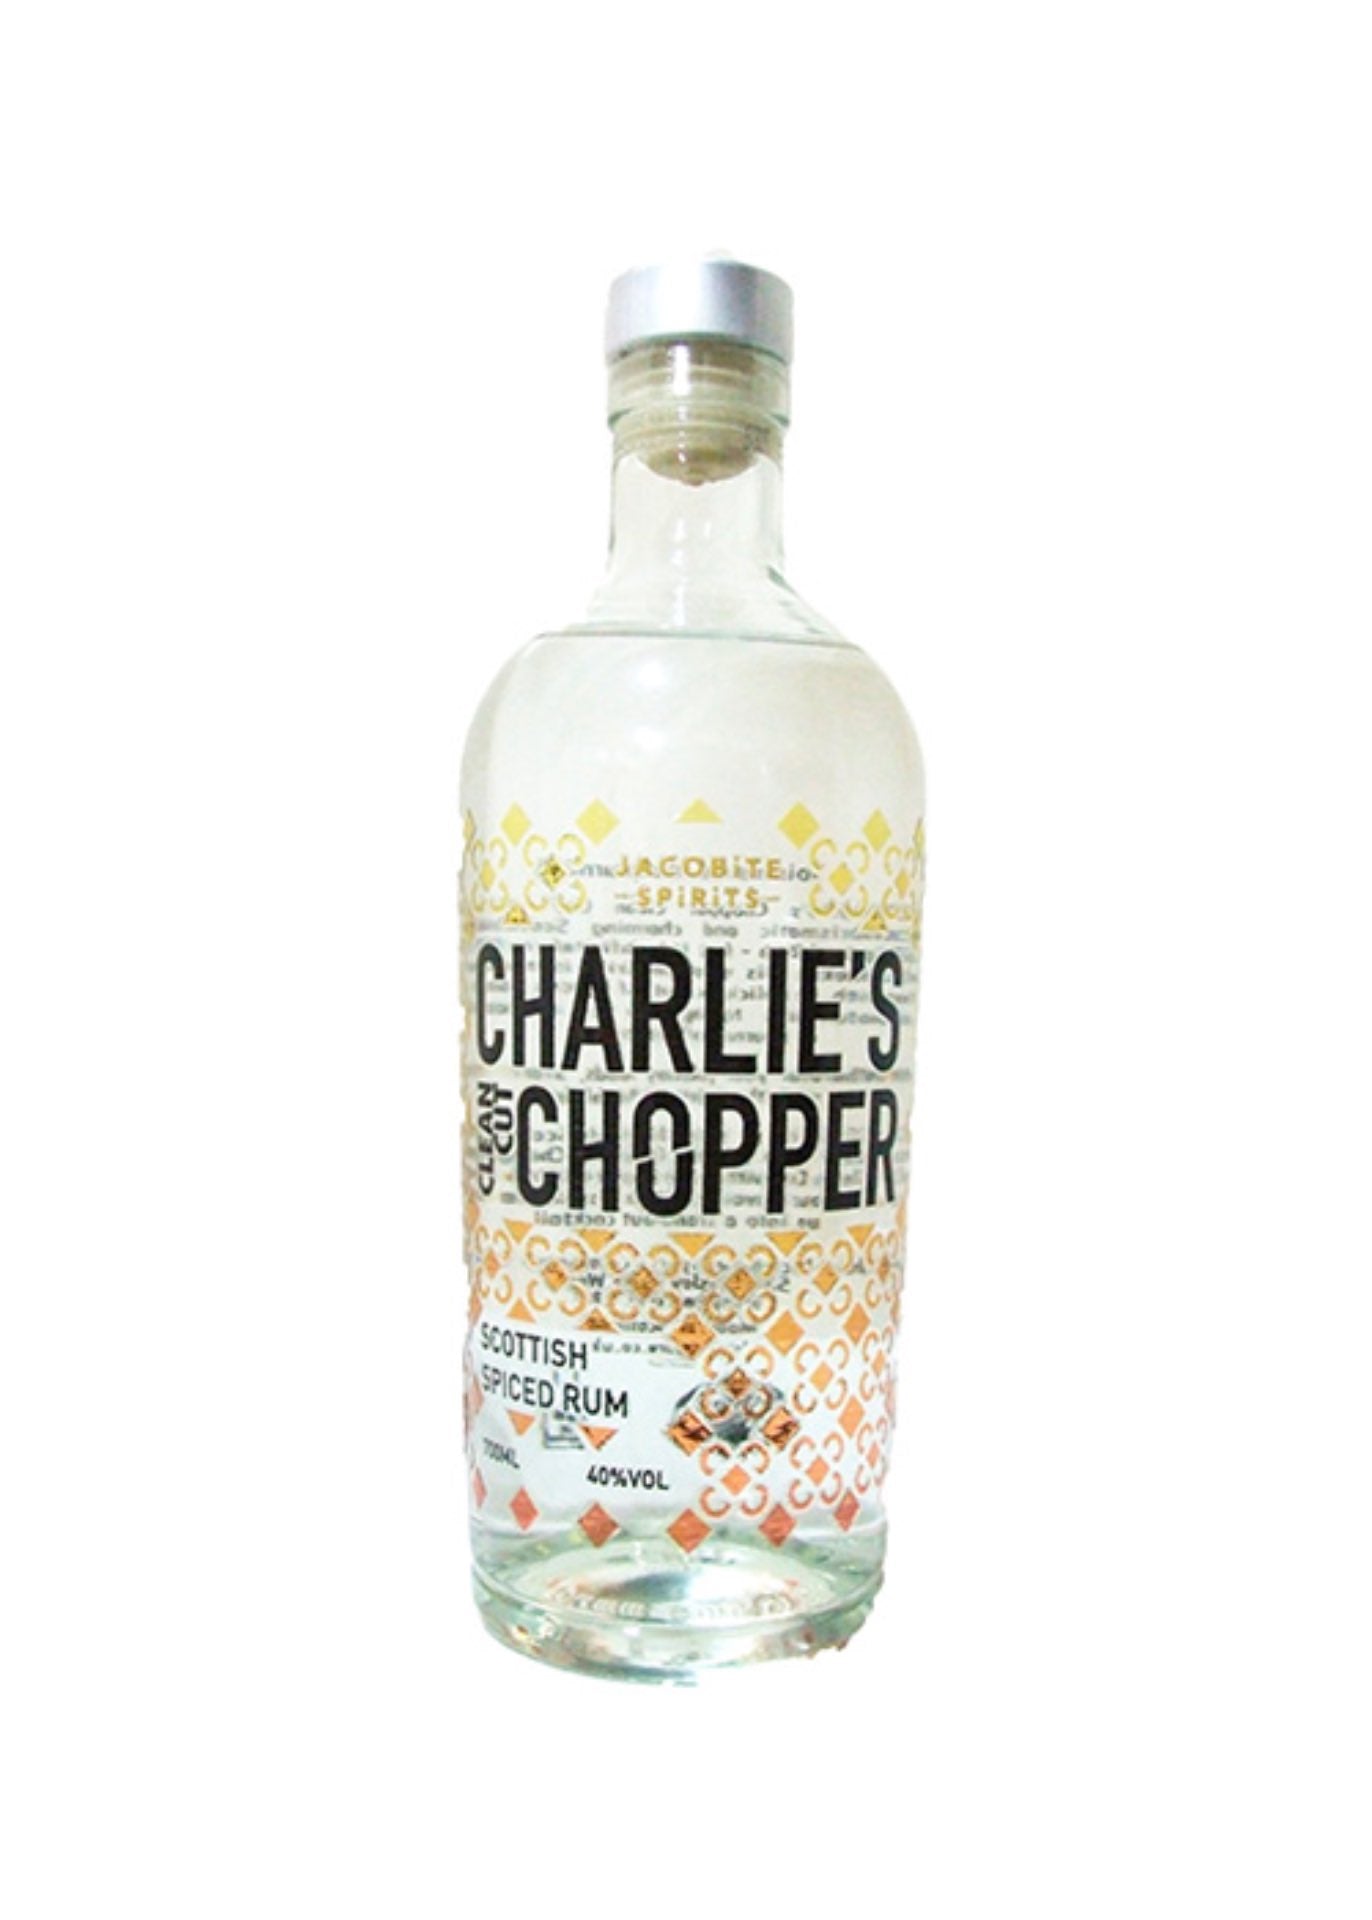 Charlie's Chopper Clean Cut Spiced Rum, Charity Auction